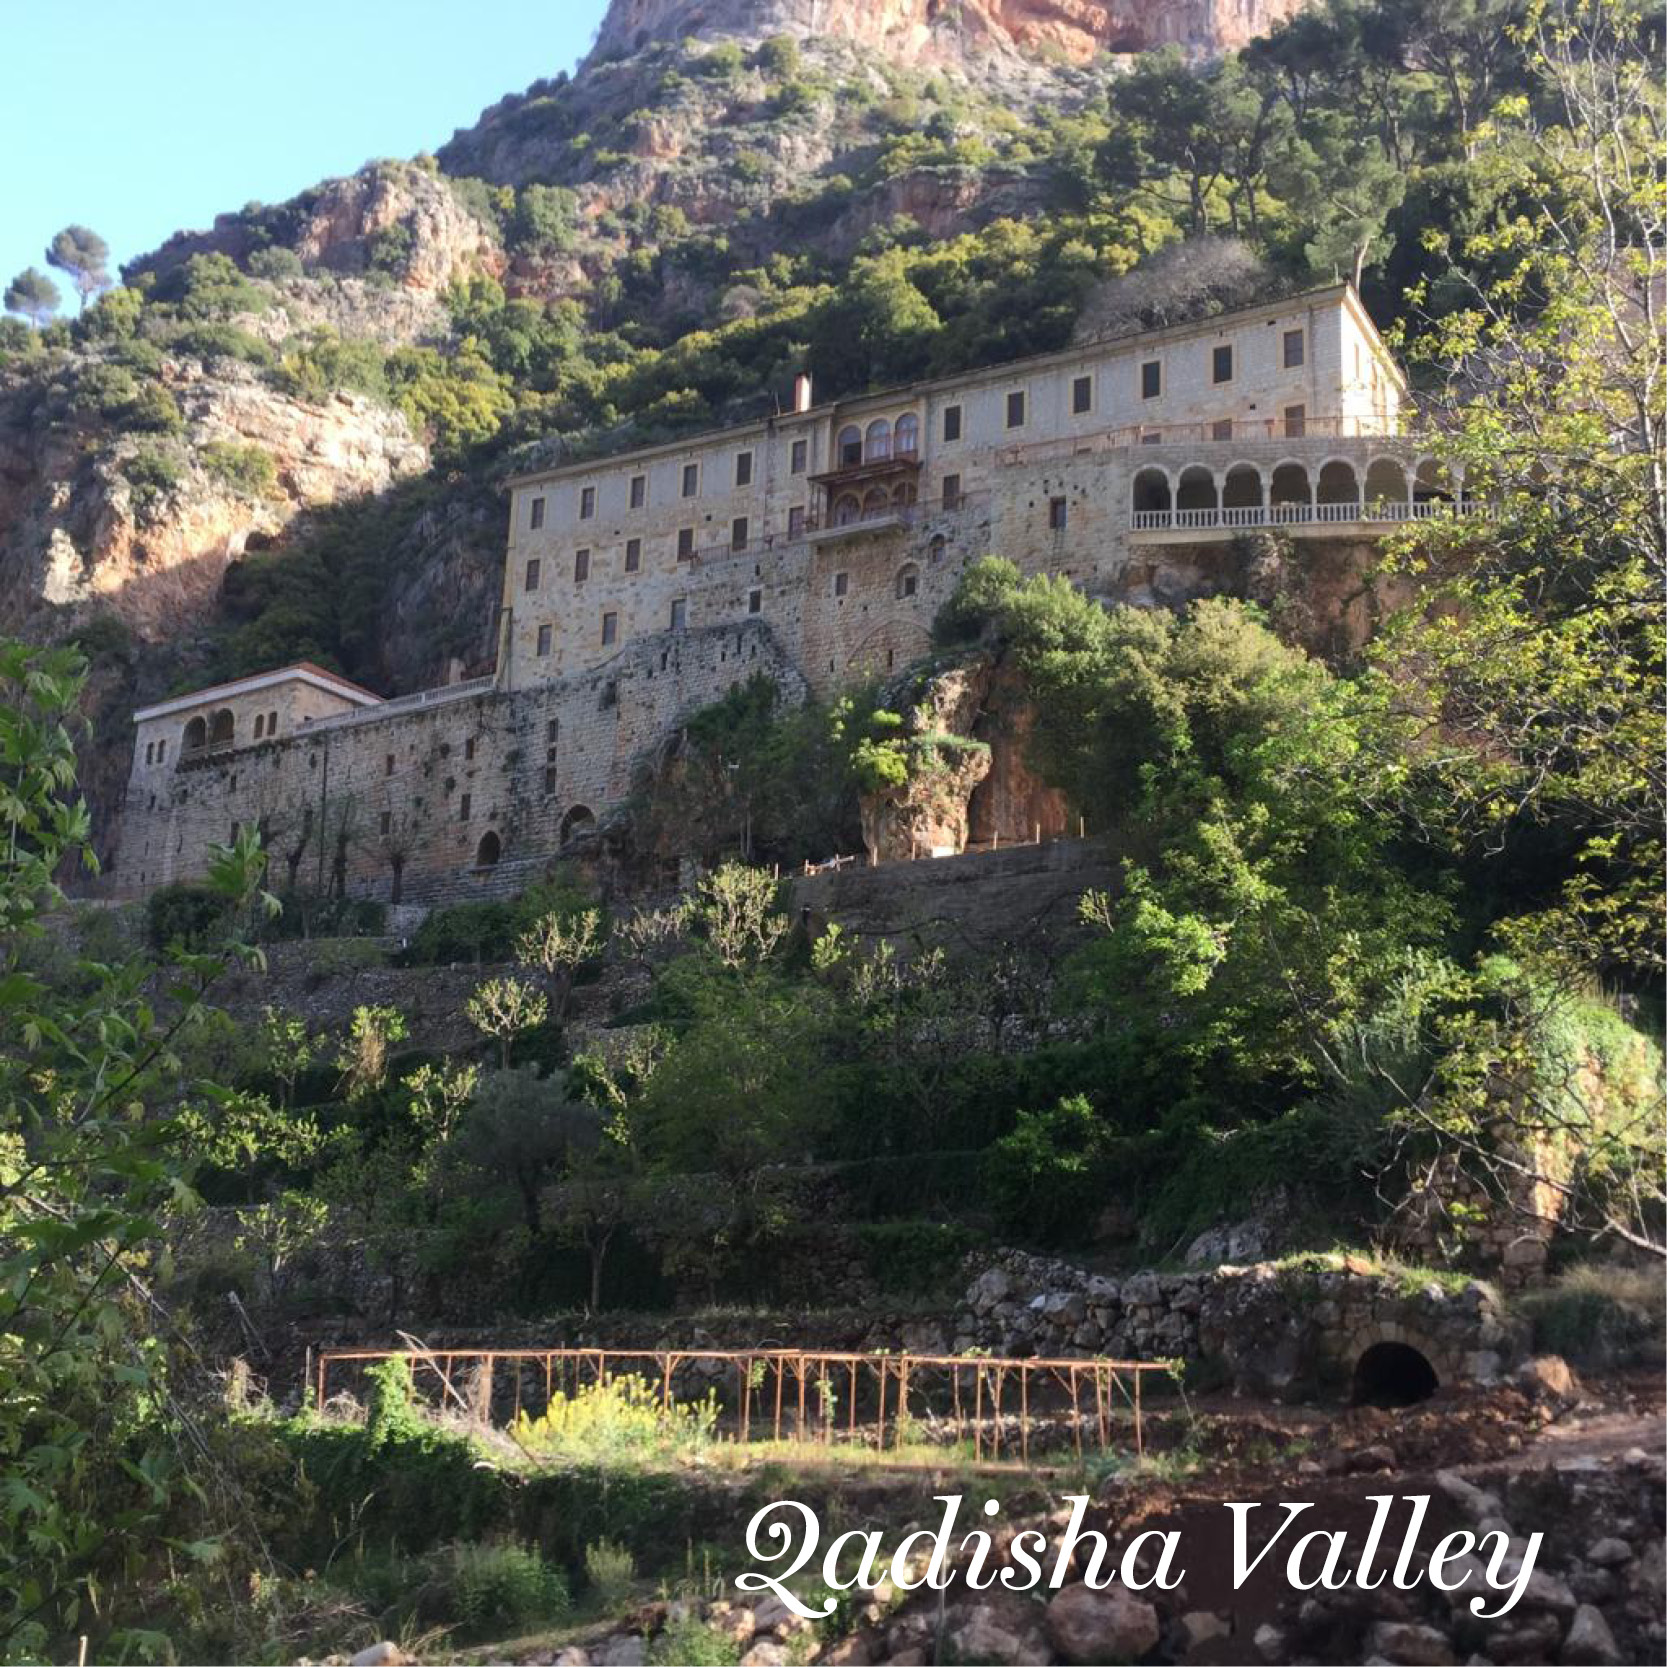 Qadisha valley